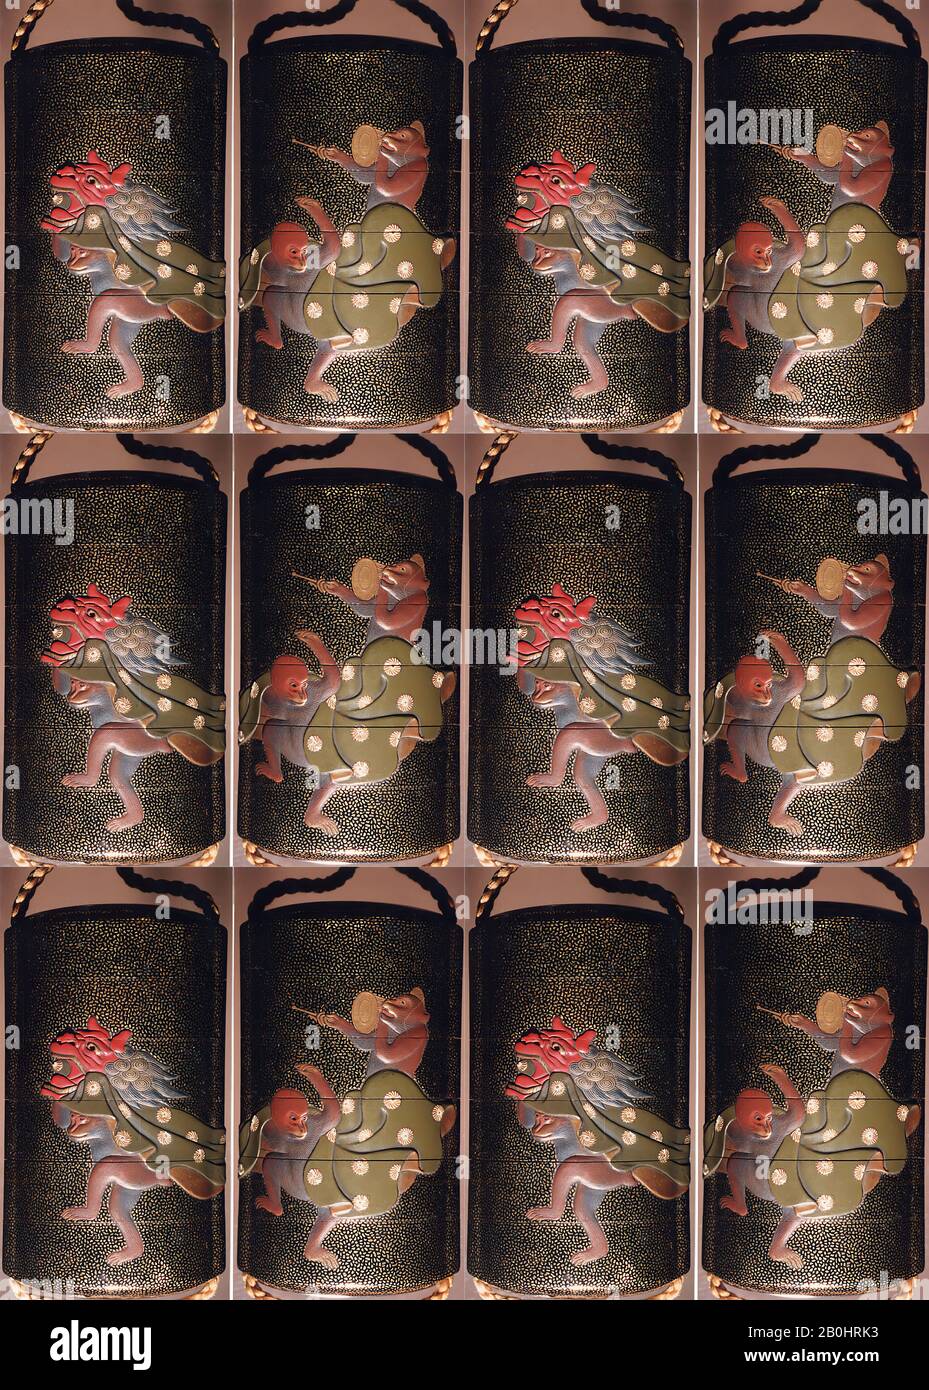 Fall (Inrō) mit Design von Drei Affen als Neujahrstänzer, Japan, Edo-Zeit (1615-1868), Datum 19. Jahrhundert, Japan, Lack, Roiro, Hirame, Gold und farbig Hiramakie, Takamakie; Interieur: Nashiji und Fungame, 3 9/16 x 1 15/16 x 1 1/8 Zoll. (9 x 5 x 2,8 cm), Inrō Stockfoto